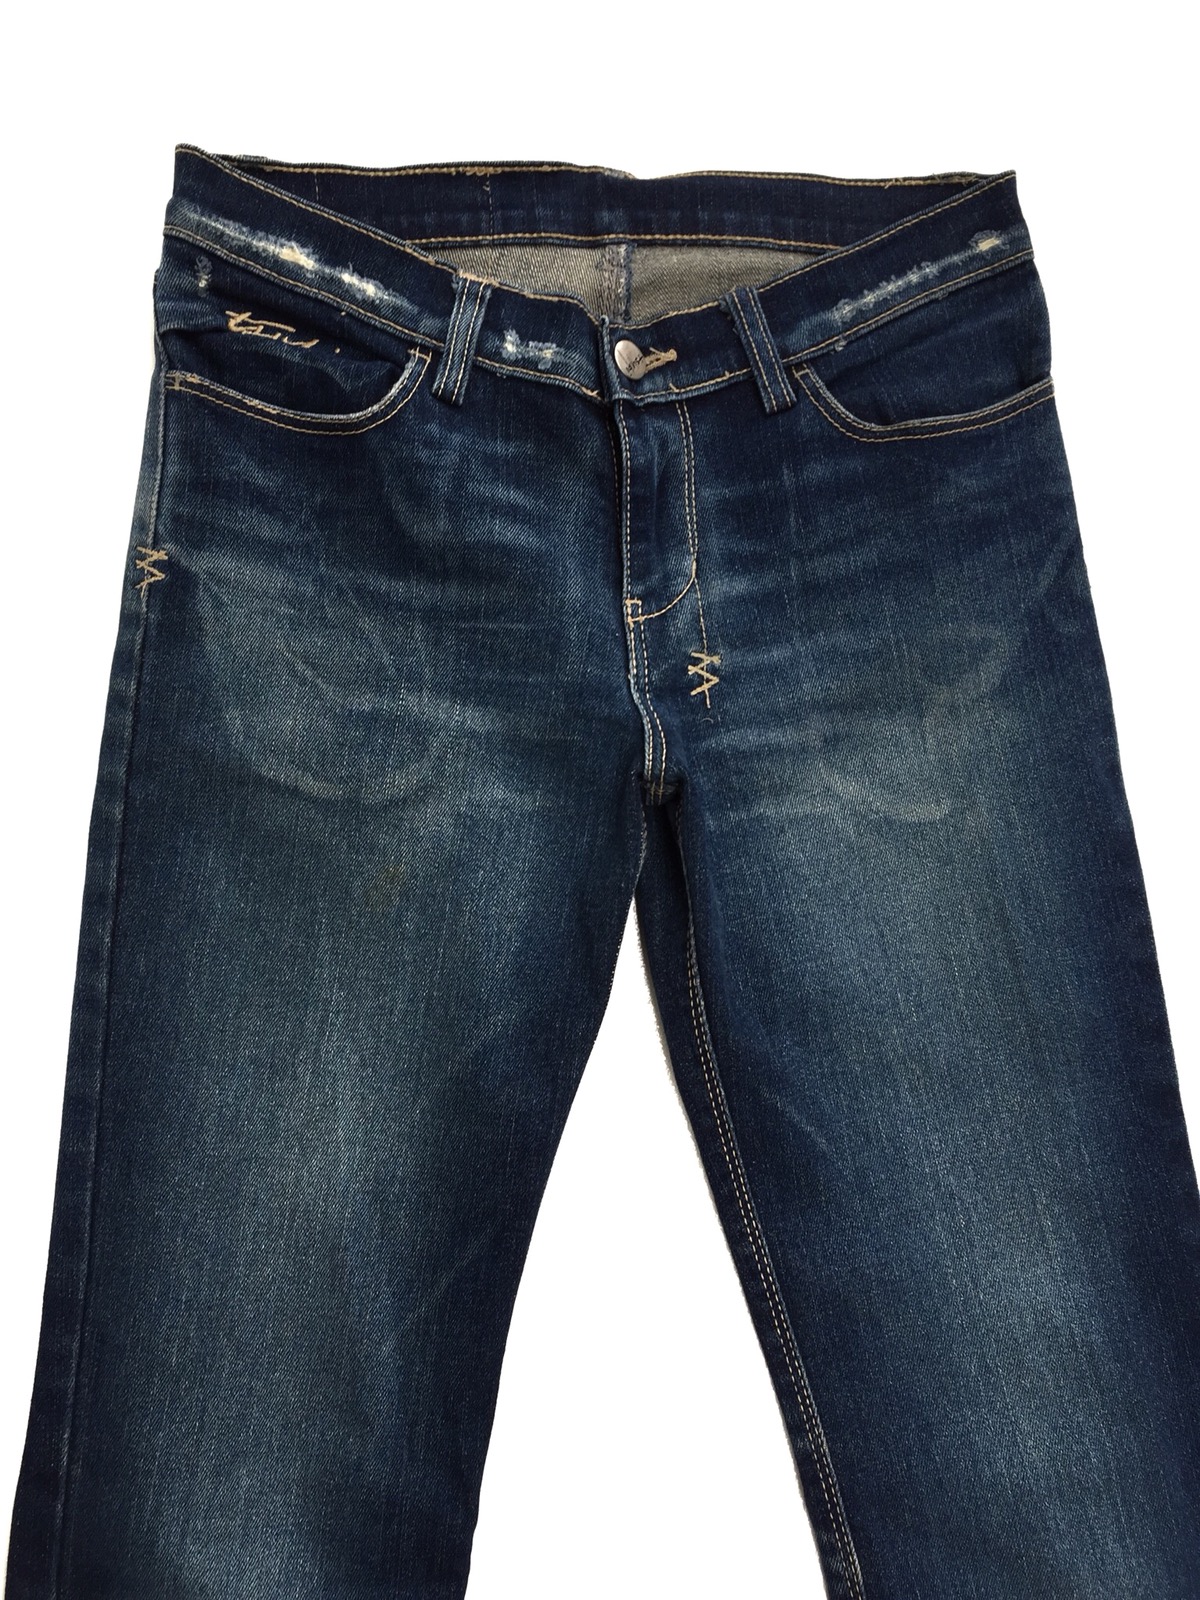 KSUBI Distressed Rip Van Winkle Jeans - 4